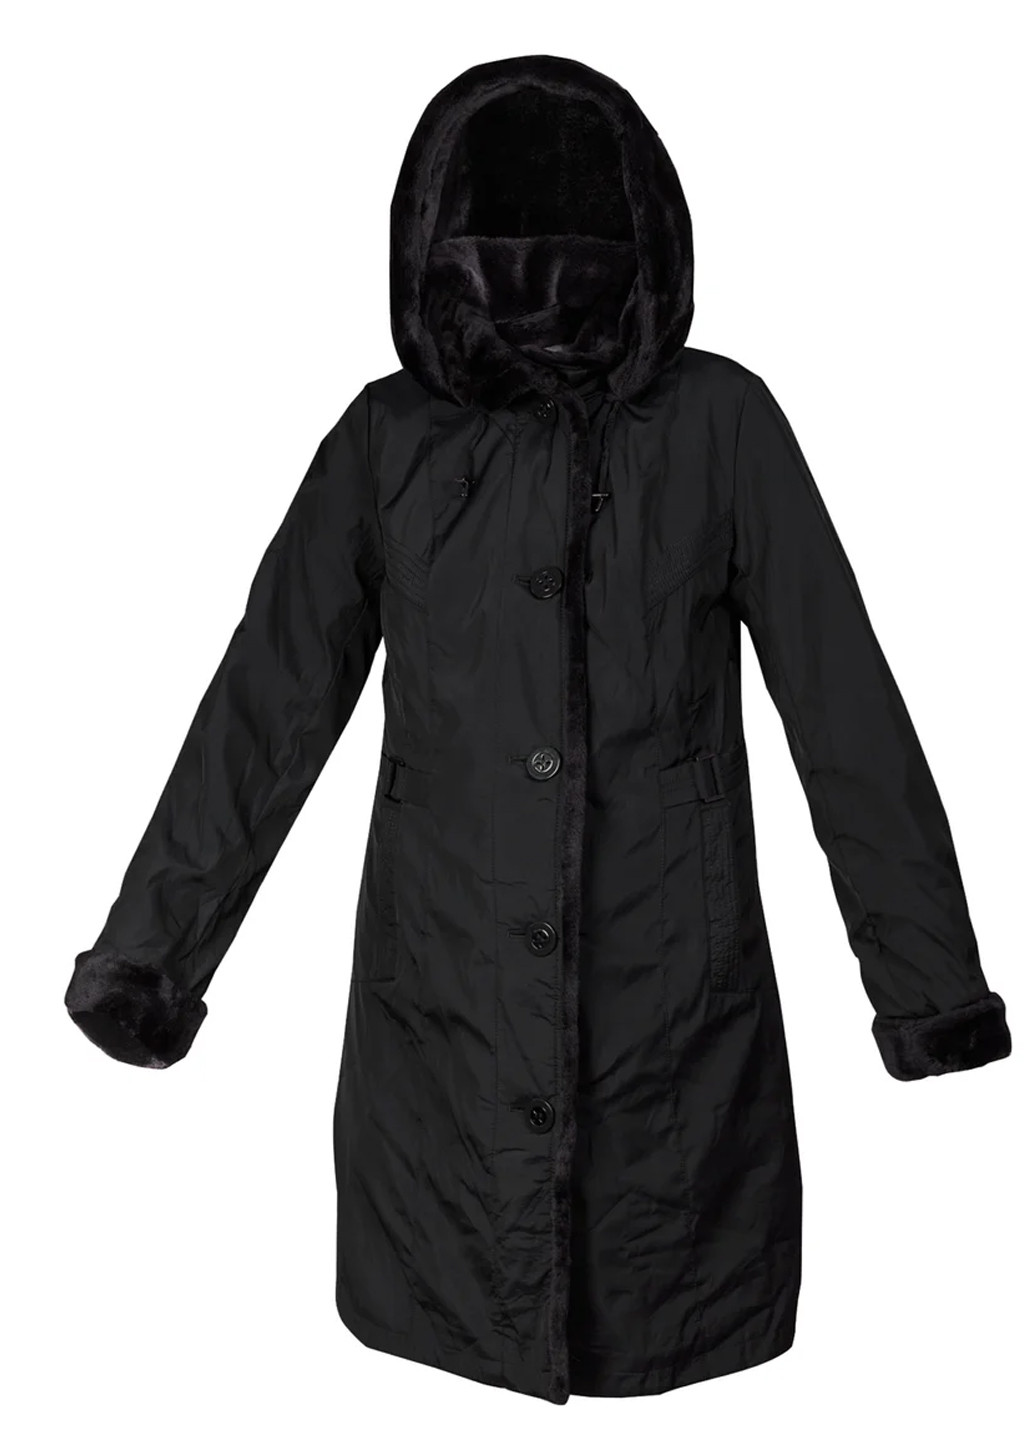 Черное зимнее Пальто длинное с эко-мехом мутоном с капюшоном City Classic